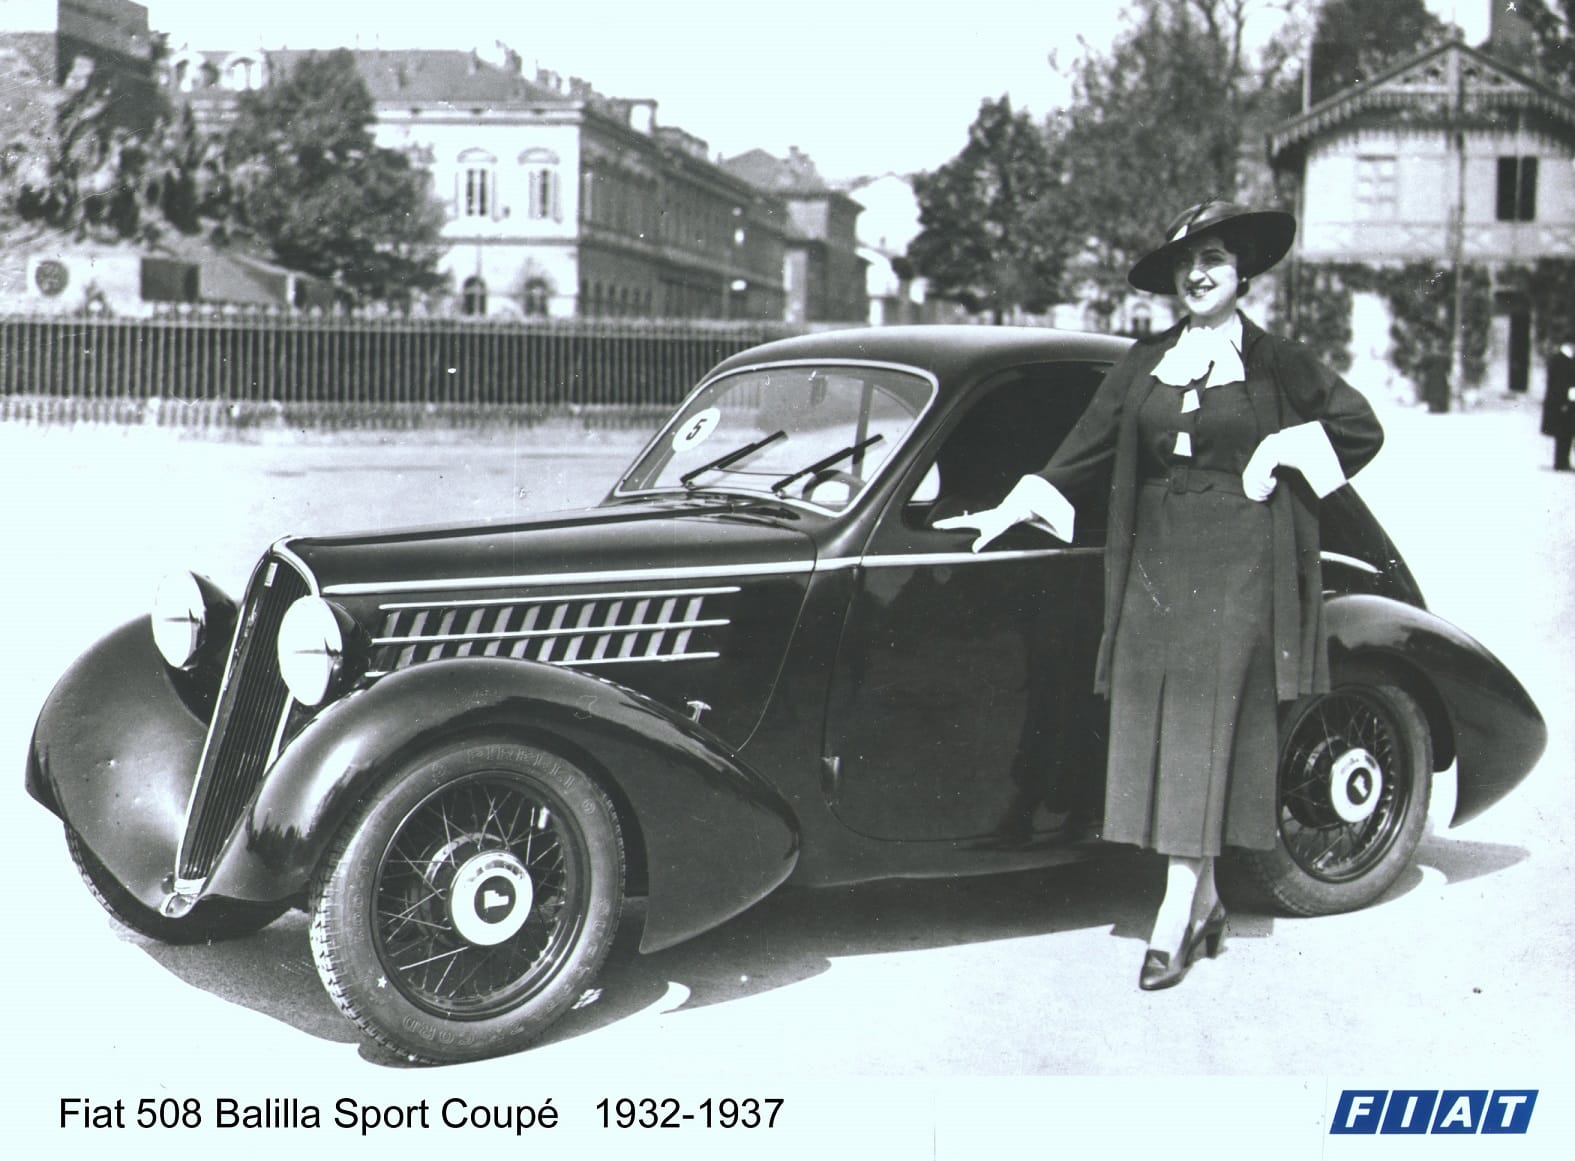 Fiat 508 Balilla: Trotz Weltwirtschaftskrise setzten mehrere Autohersteller, wie Fiat, 1932 auf potenzielle Volumenmodelle.